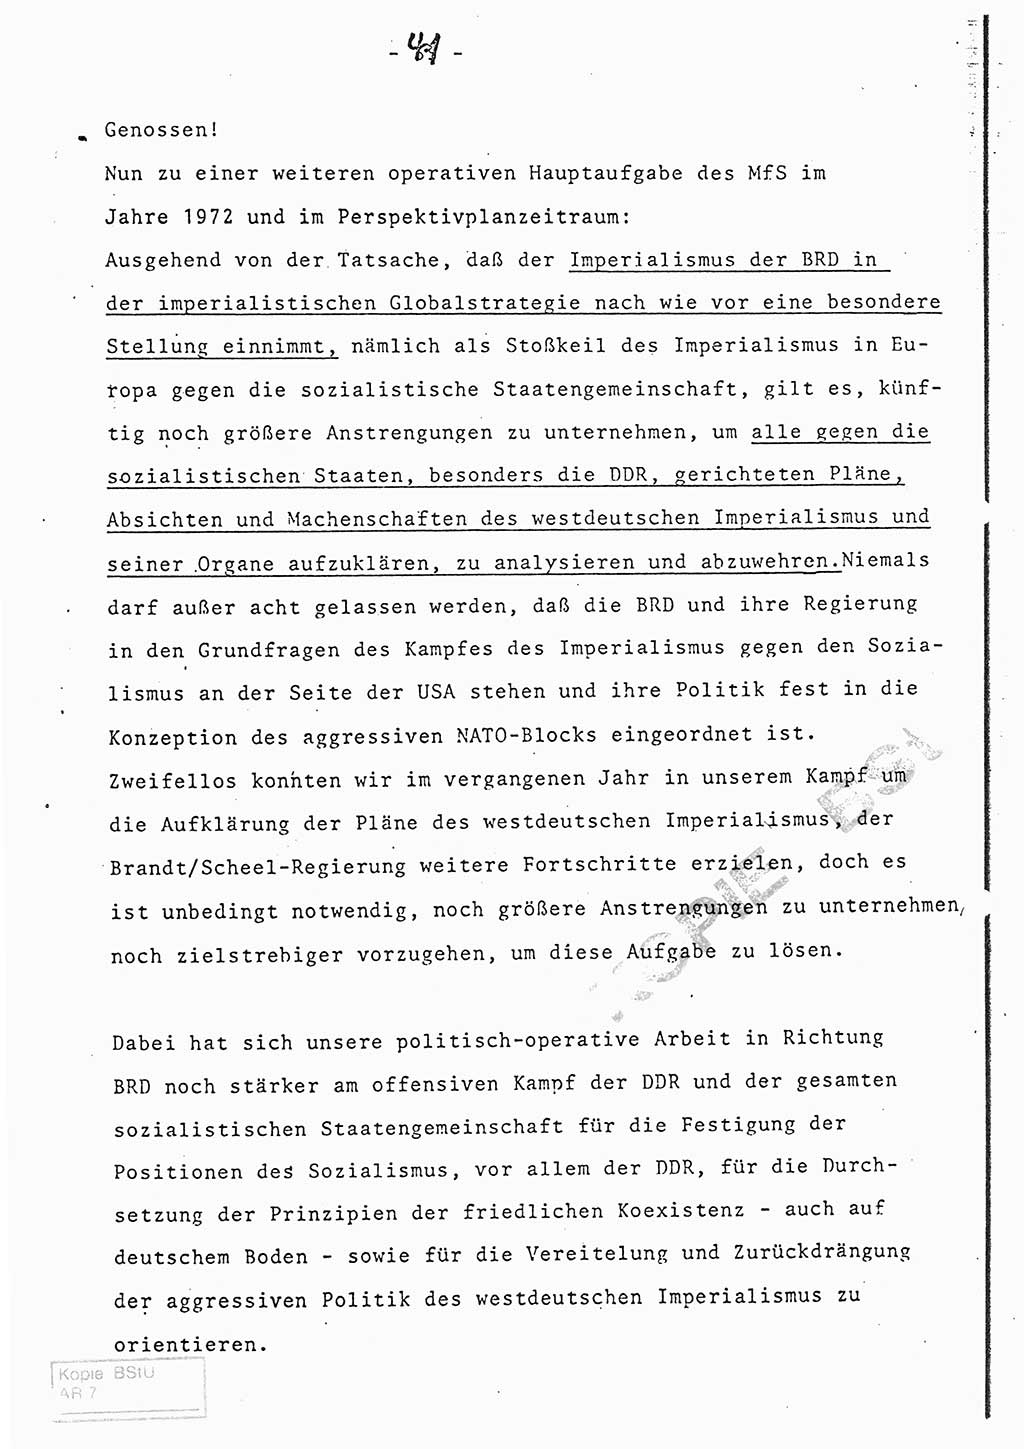 Referat (Entwurf) des Genossen Minister (Generaloberst Erich Mielke) auf der Dienstkonferenz 1972, Ministerium für Staatssicherheit (MfS) [Deutsche Demokratische Republik (DDR)], Der Minister, Geheime Verschlußsache (GVS) 008-150/72, Berlin 25.2.1972, Seite 41 (Ref. Entw. DK MfS DDR Min. GVS 008-150/72 1972, S. 41)